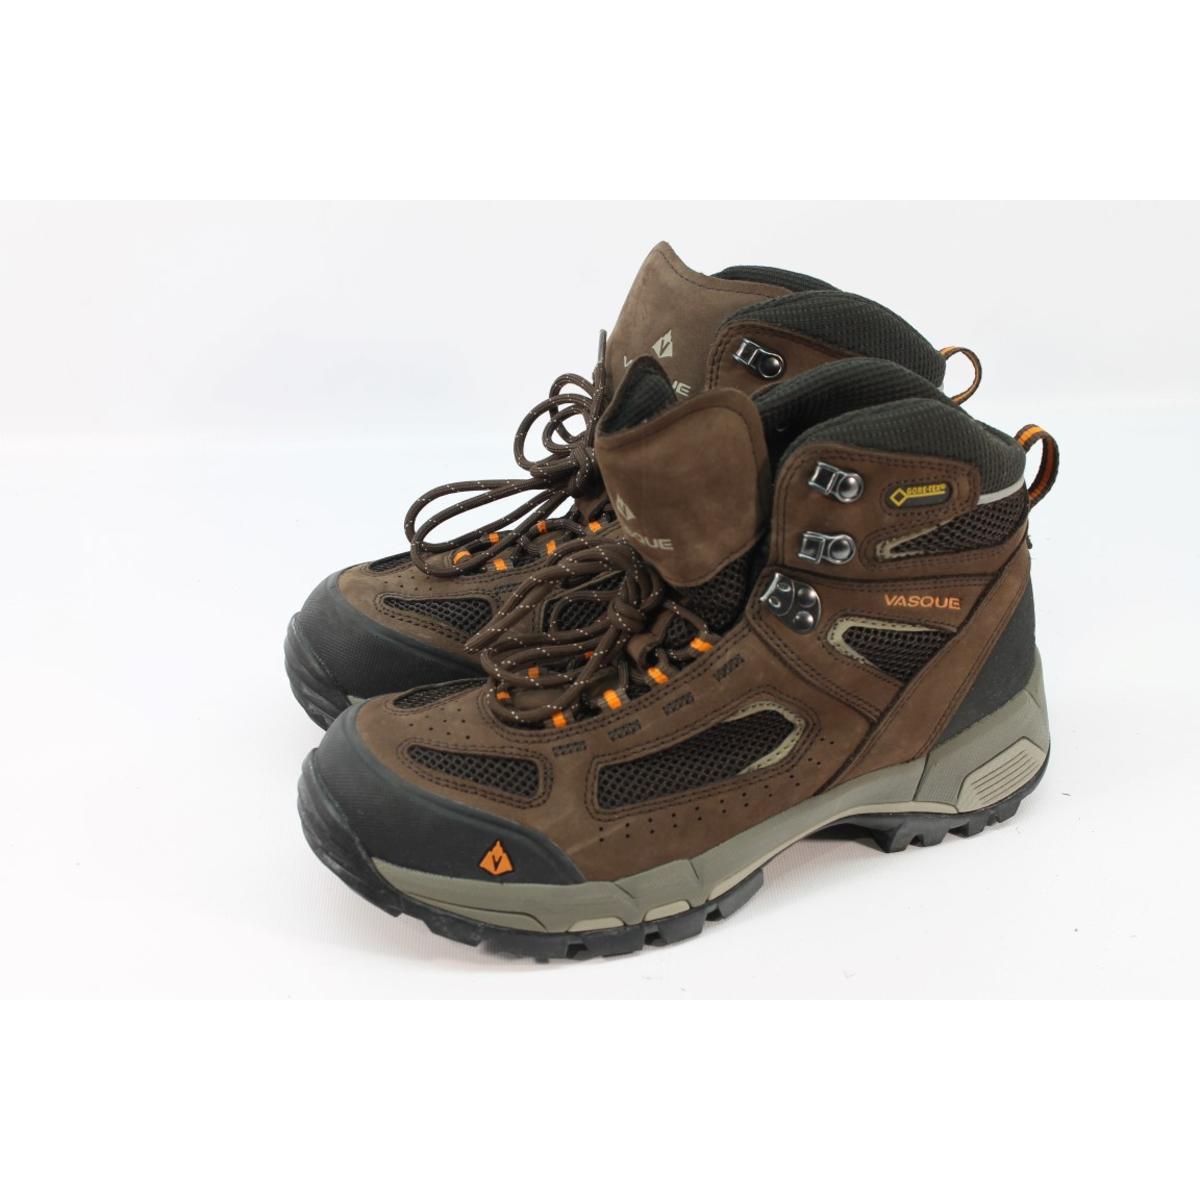 Vasque Men's Breeze 2.0 Slate Brown/Russet Orange Hiking Boots 8M | eBay